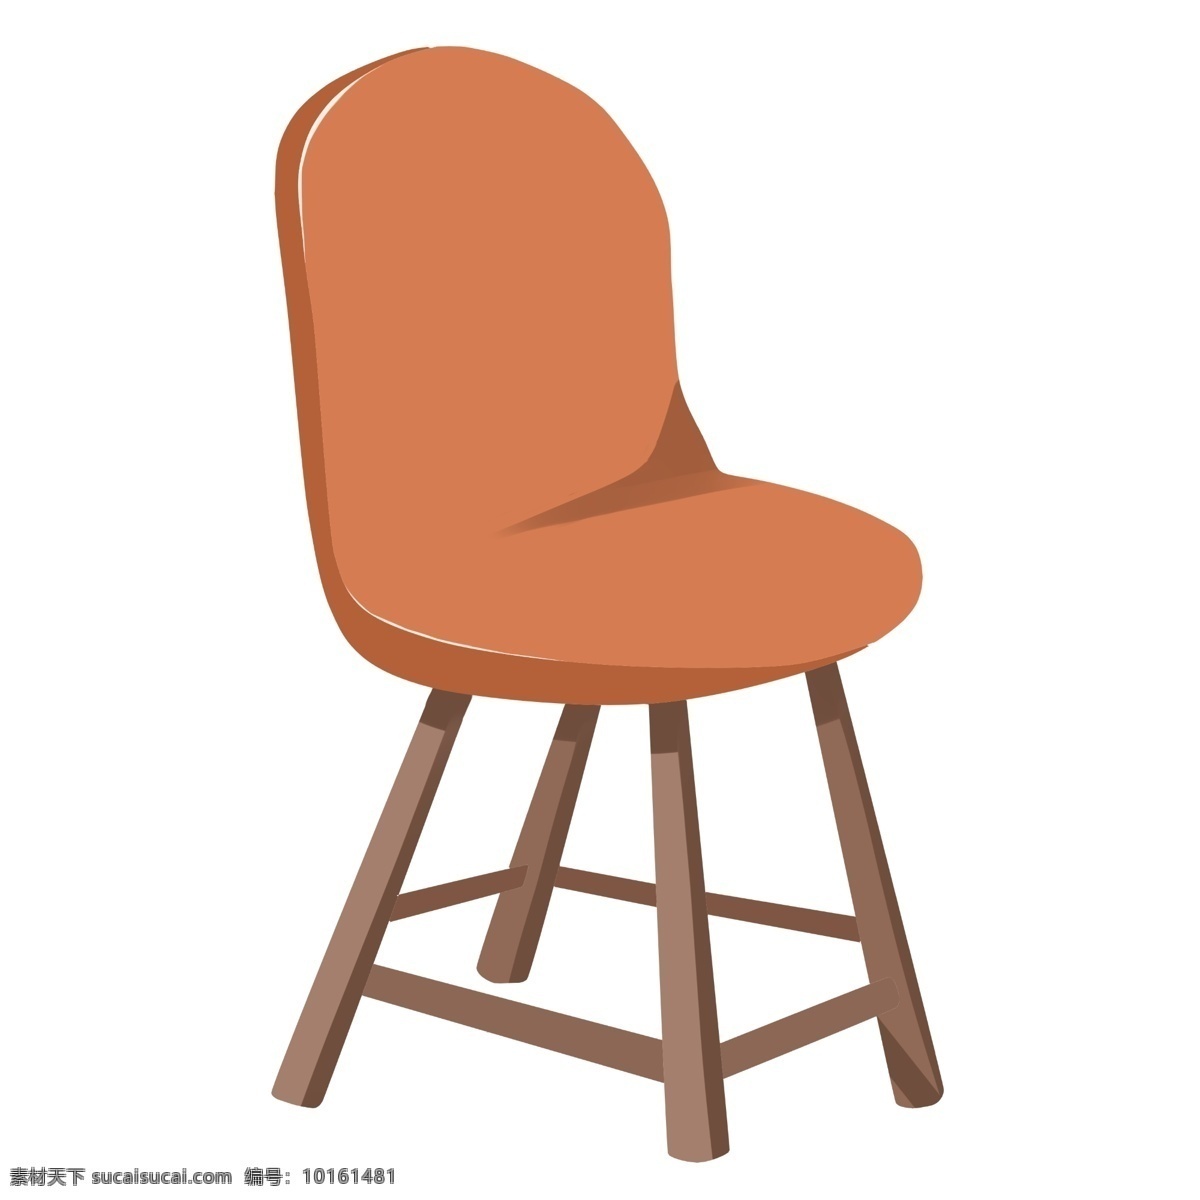 橙色 家具 椅子 插画 橙色的椅子 卡通插画 椅子插画 家具插画 家具椅子 木质椅子 橙色的家具